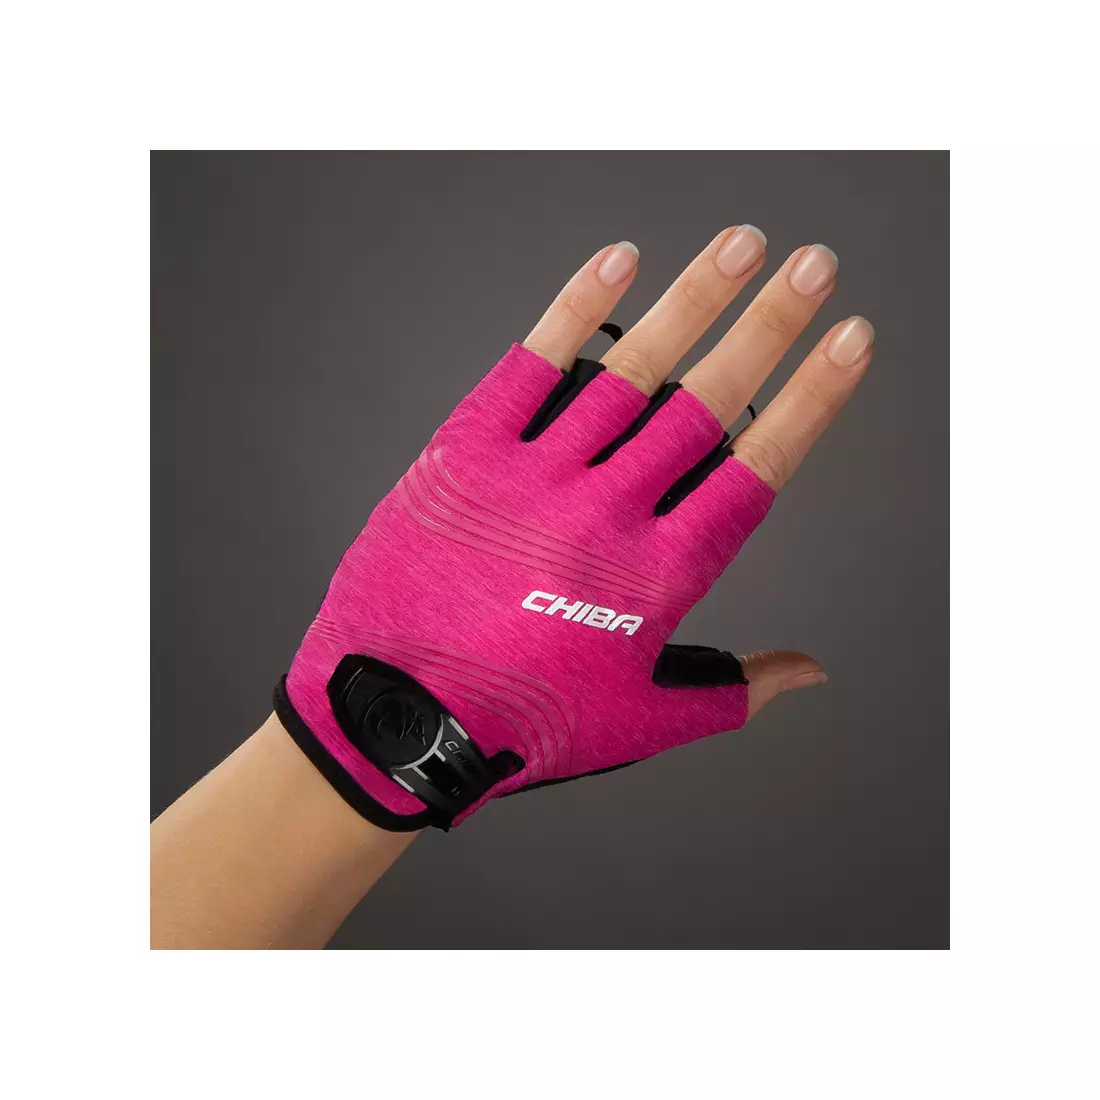 CHIBA Damenhandschuhe lady super light pink-magenta 3090220